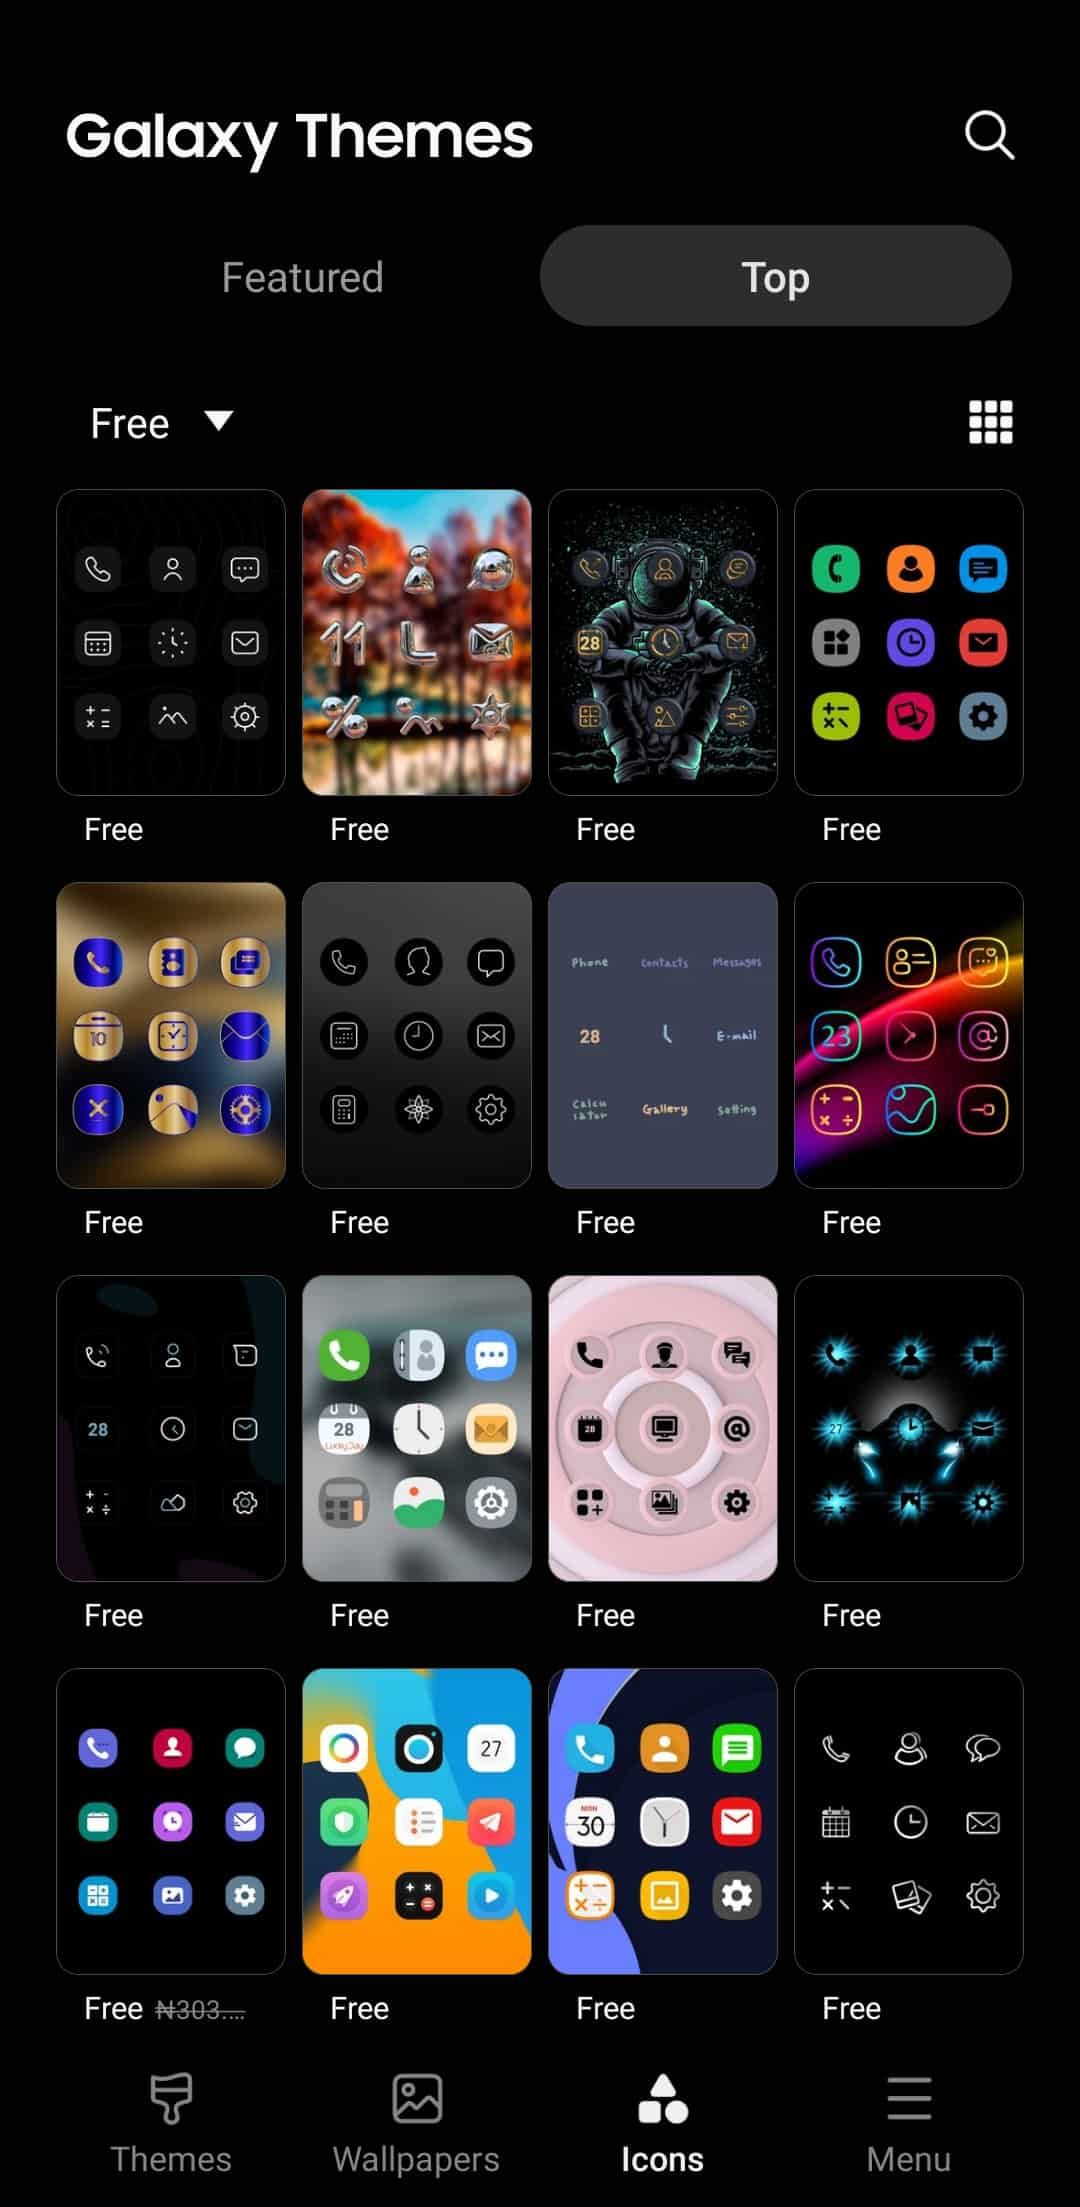 Galaxy Themes icon-packs